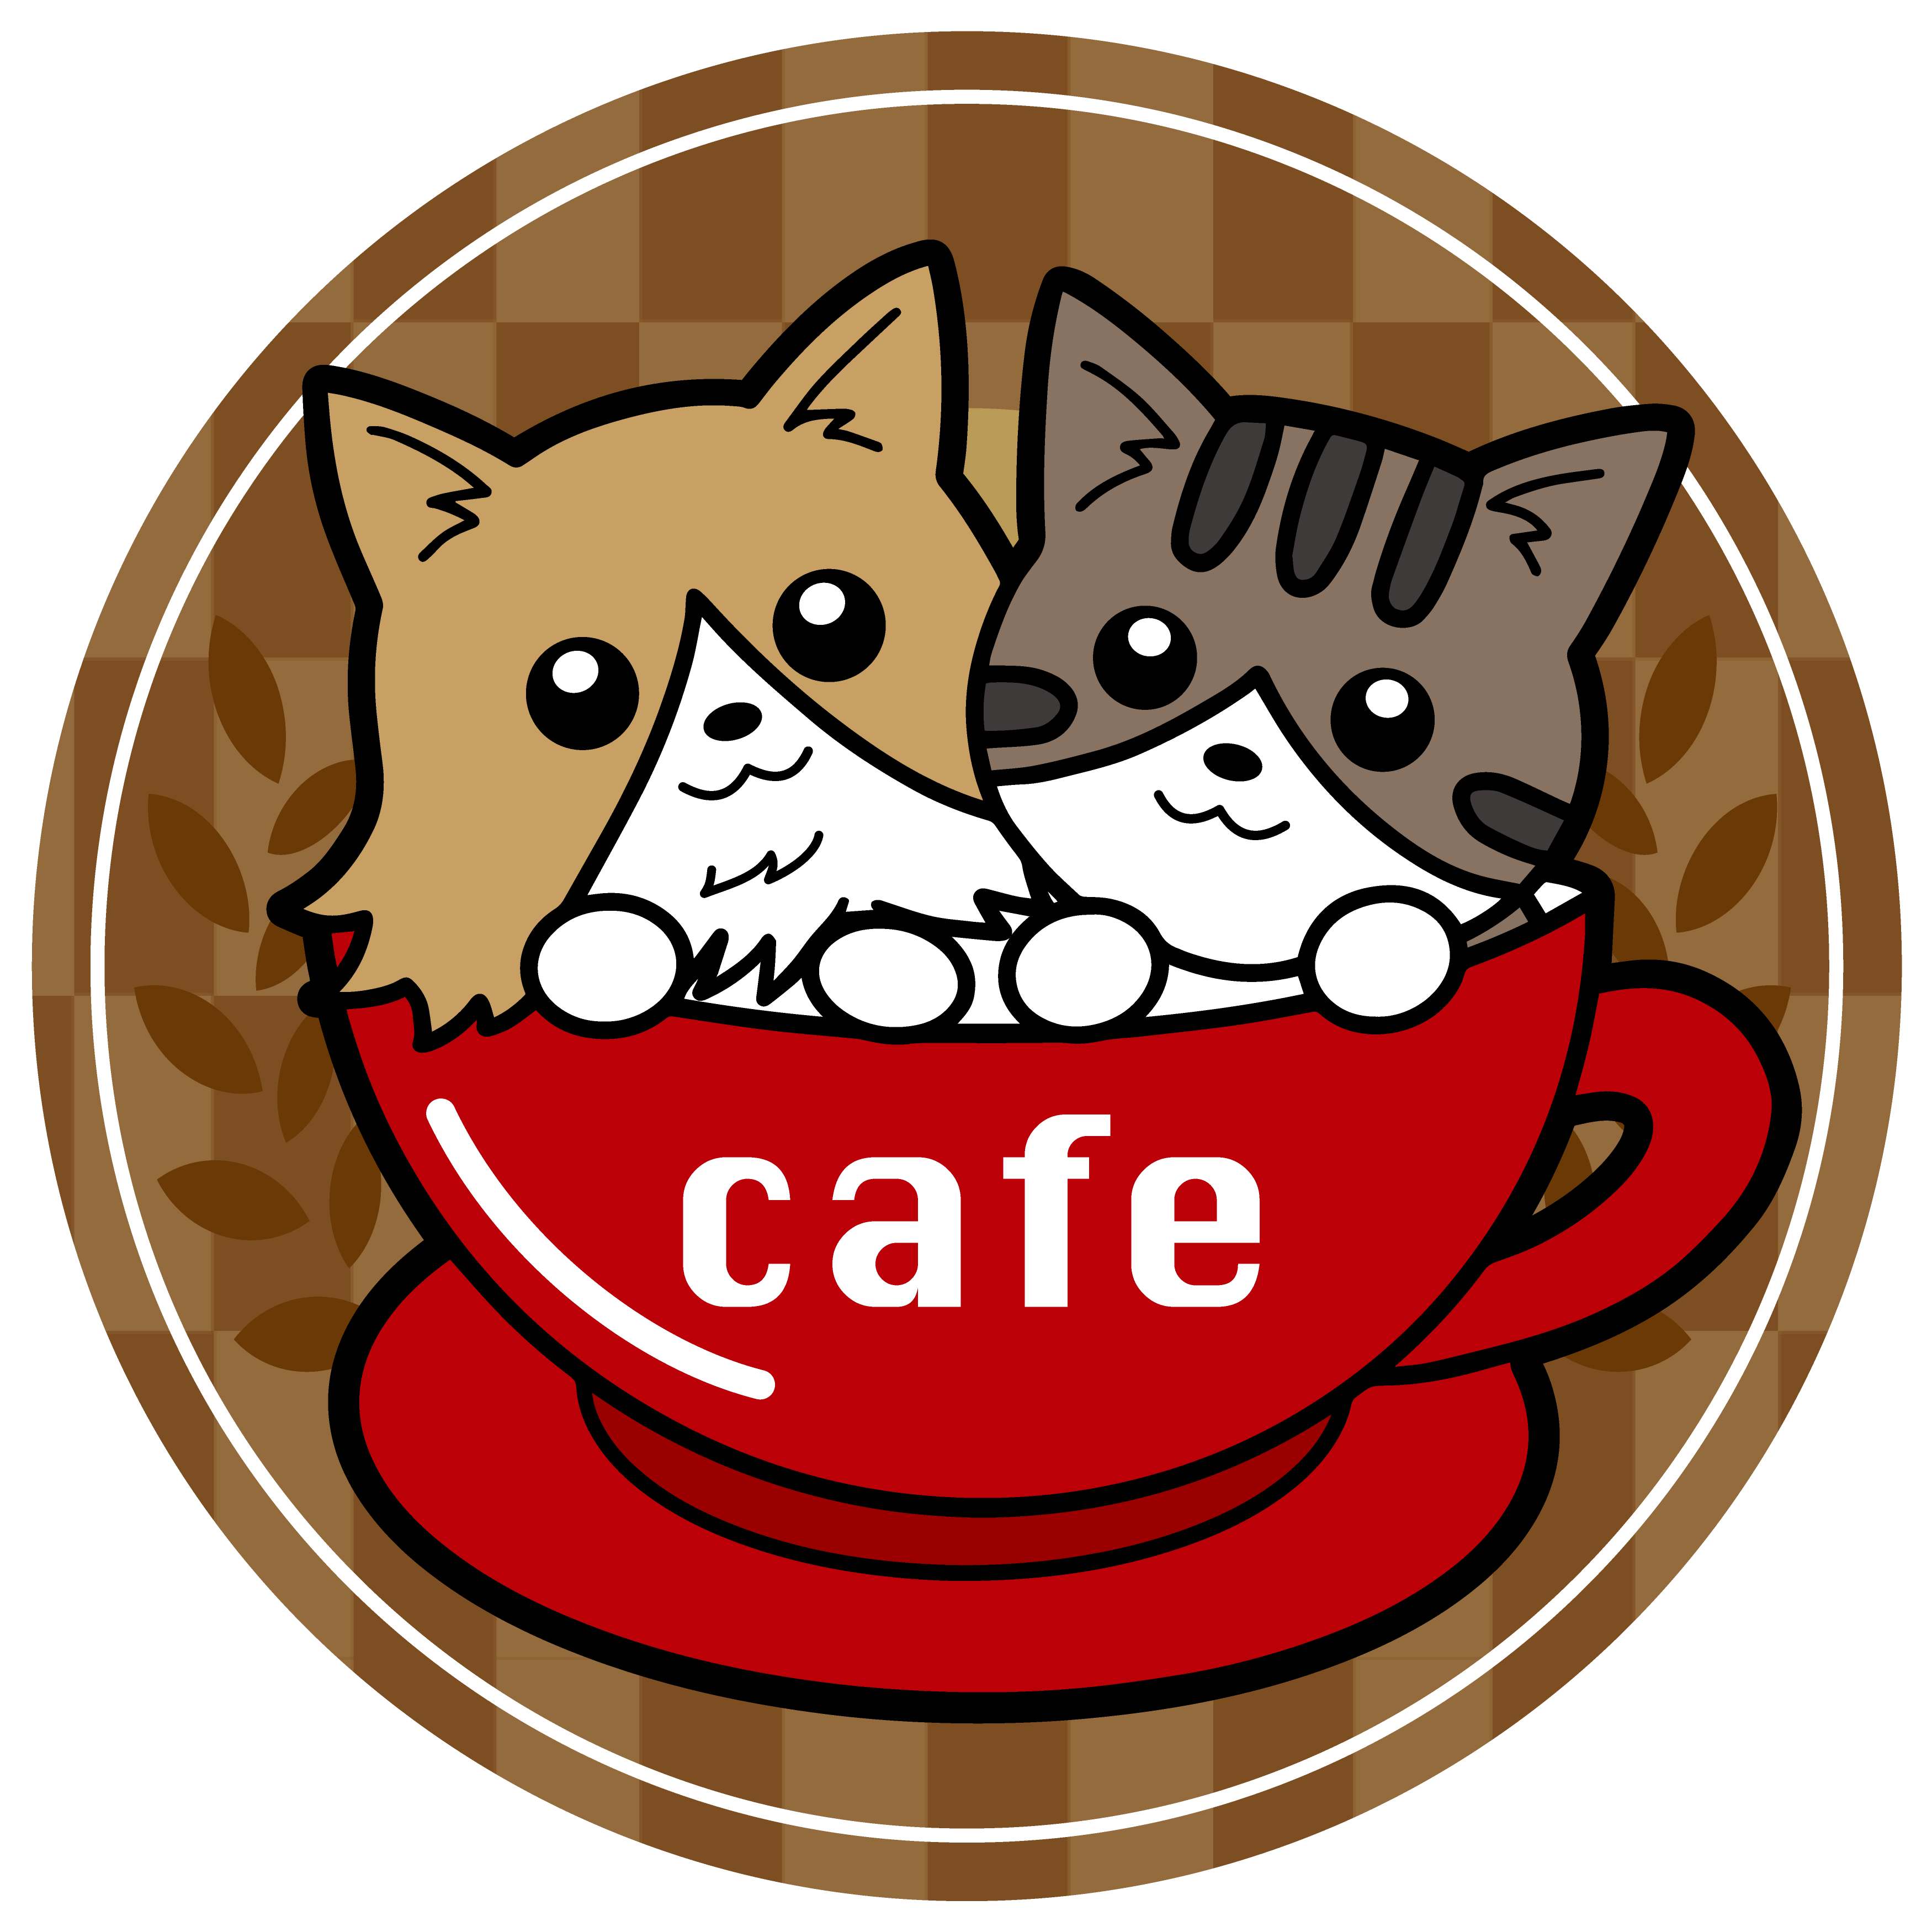 美山 cafe marcoロゴ